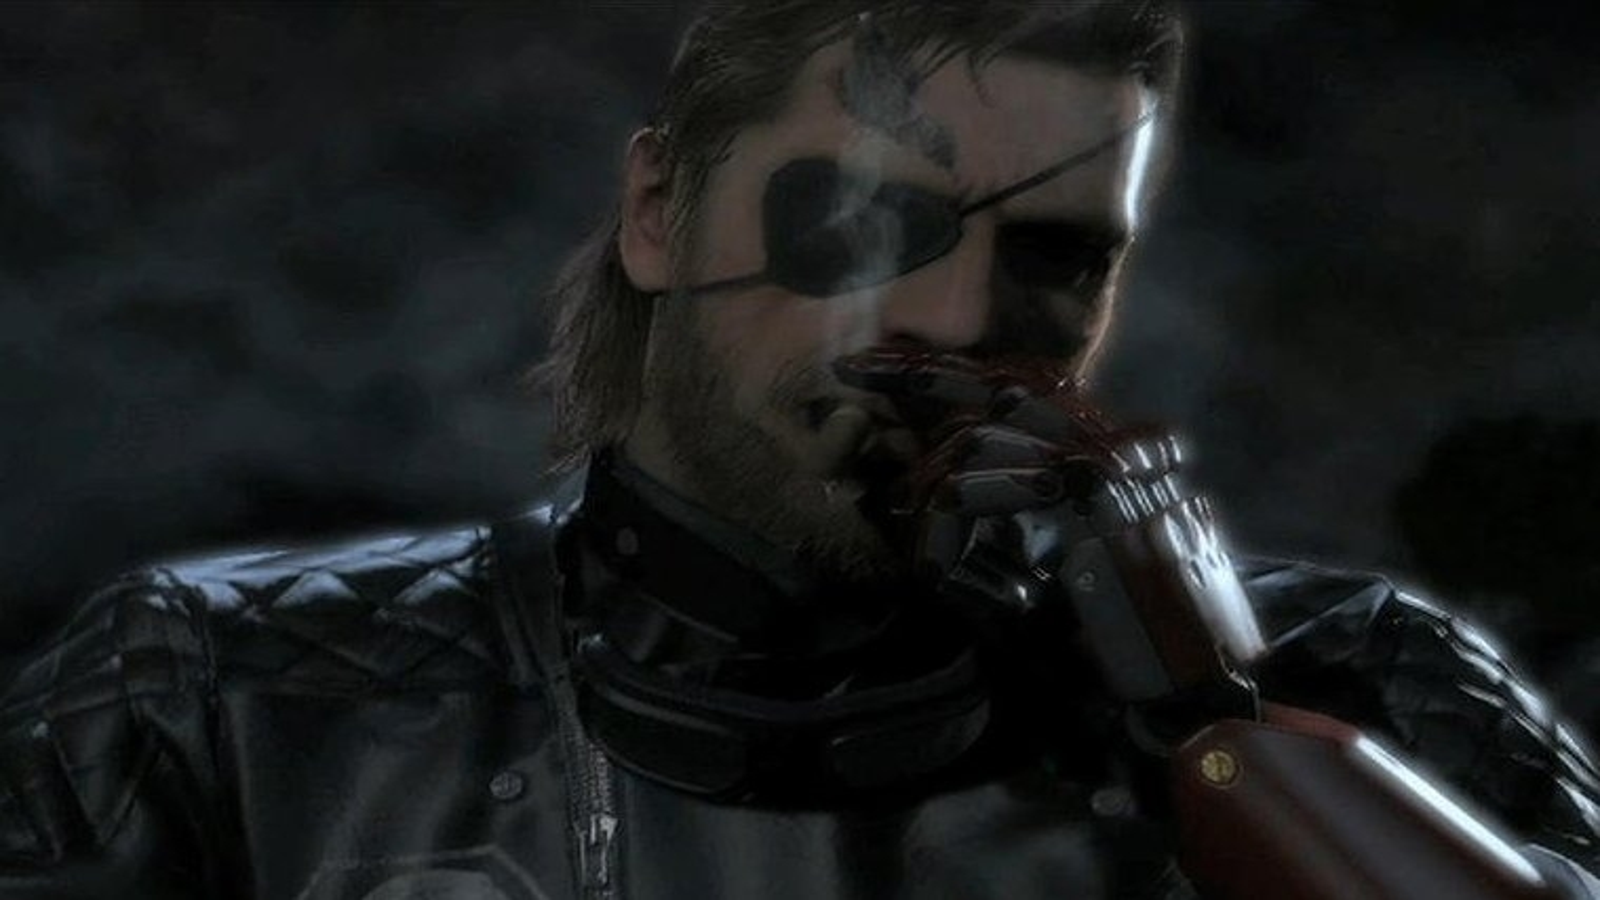 Metal Gear Solid 5: The Phantom Pain é confirmado para PS3 e Xbox 360